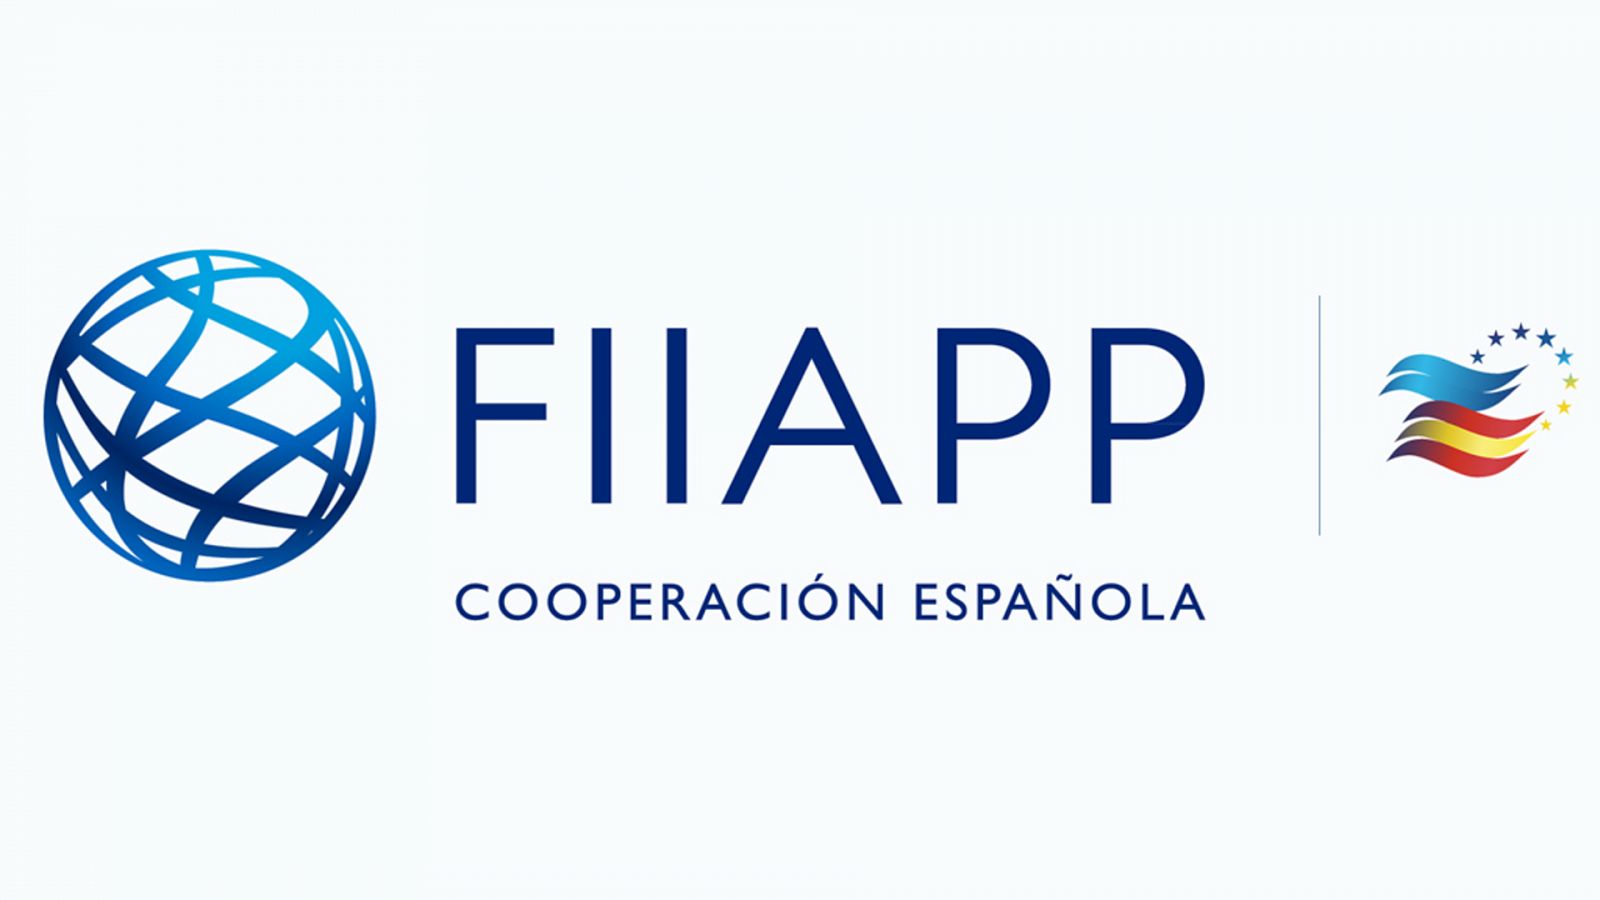 Cooperación pública en el mundo (FIIAPP) - Contra el narcotráfico, cooperación internacional - 27/04/22 - escuchar ahora